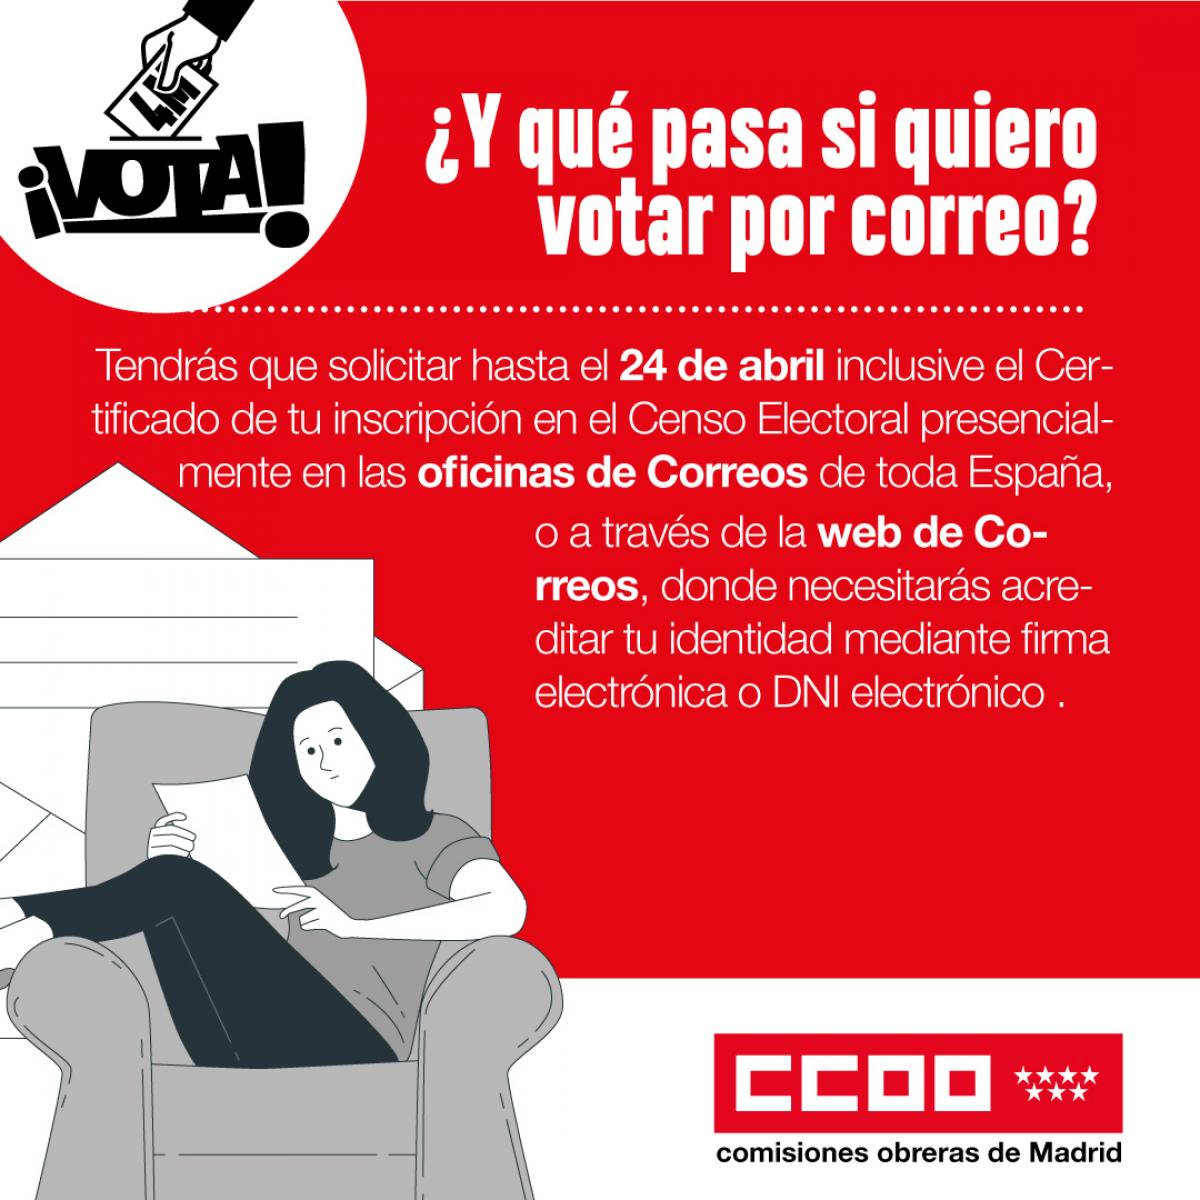 Cómo votar por correo en las elecciones de la Comunidad de Madrid del 4 de mayo de 2021